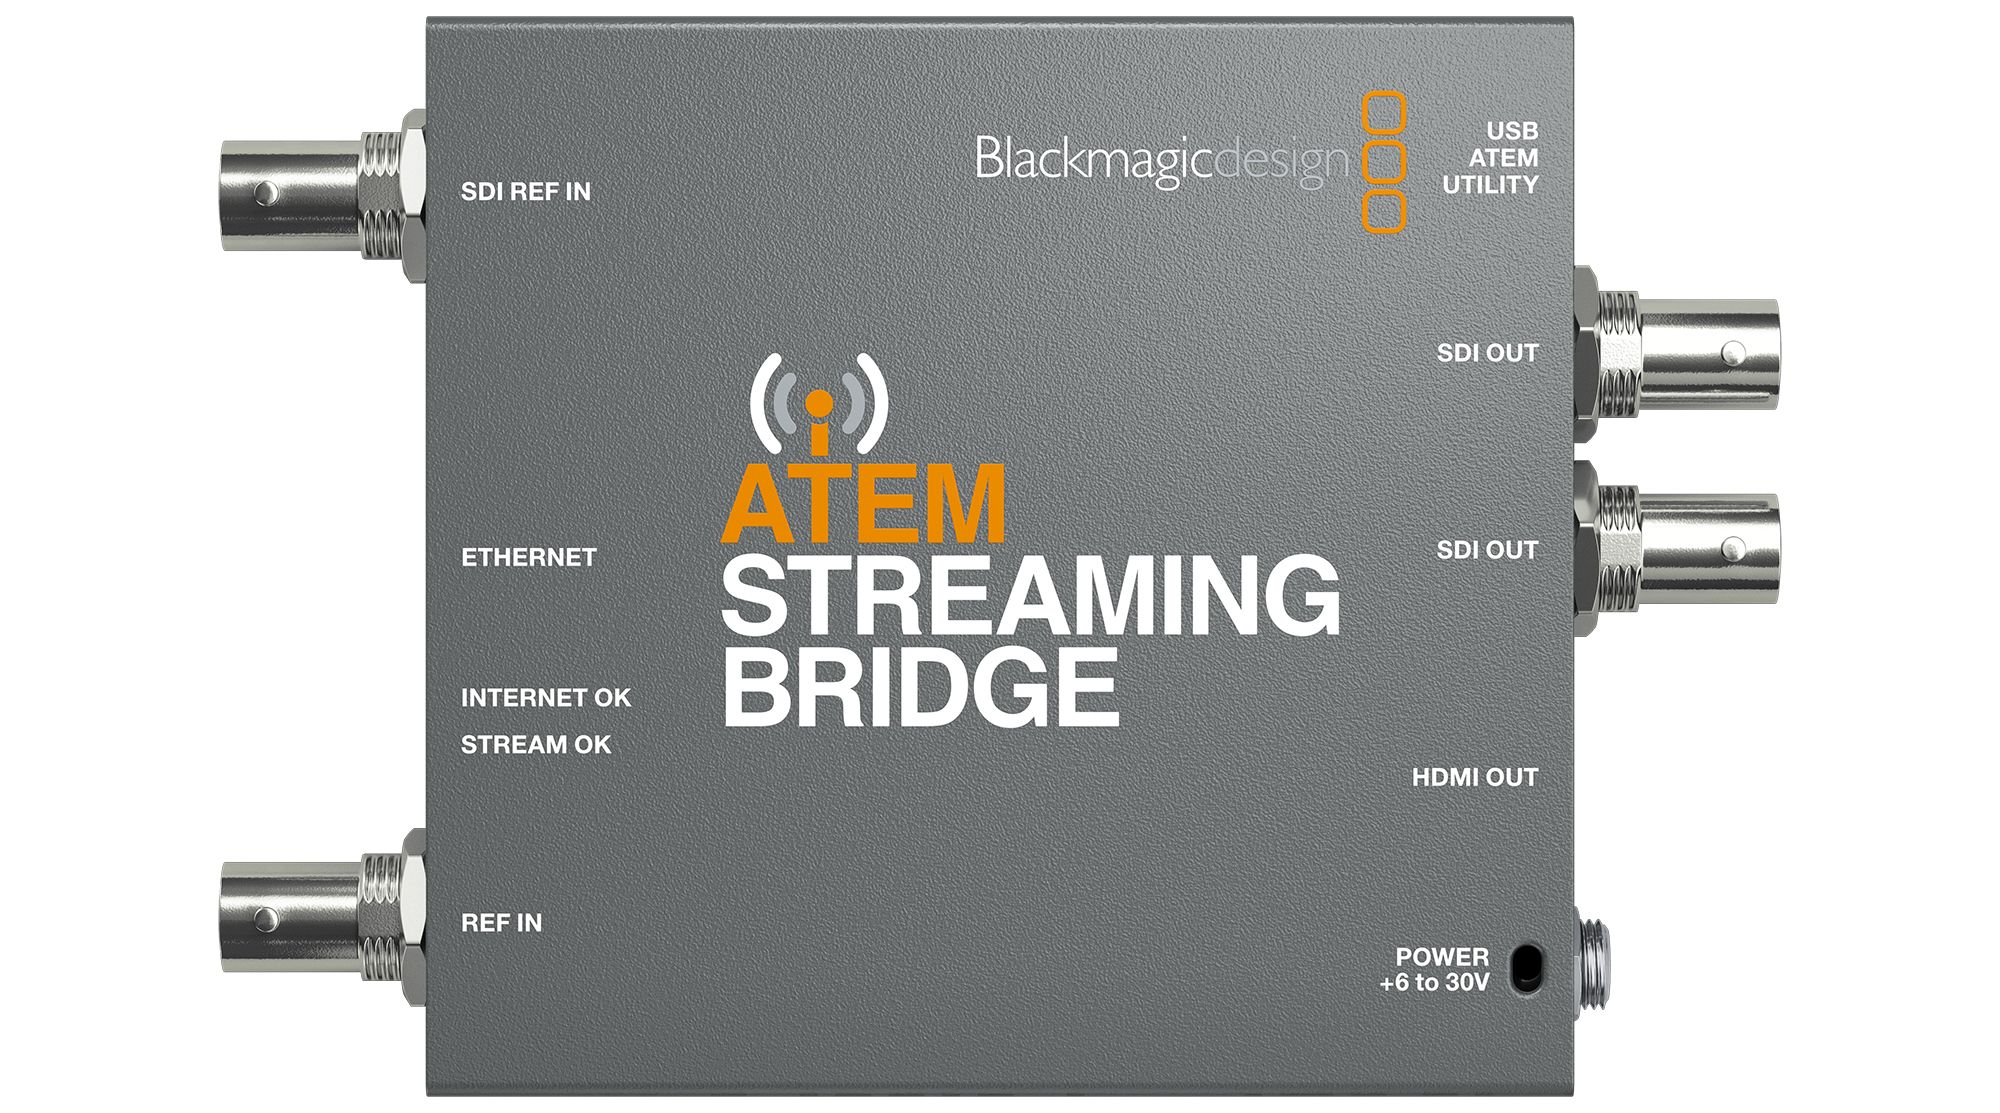 BLACKMAGIC DESIGN - ATEM Streaming Bridge